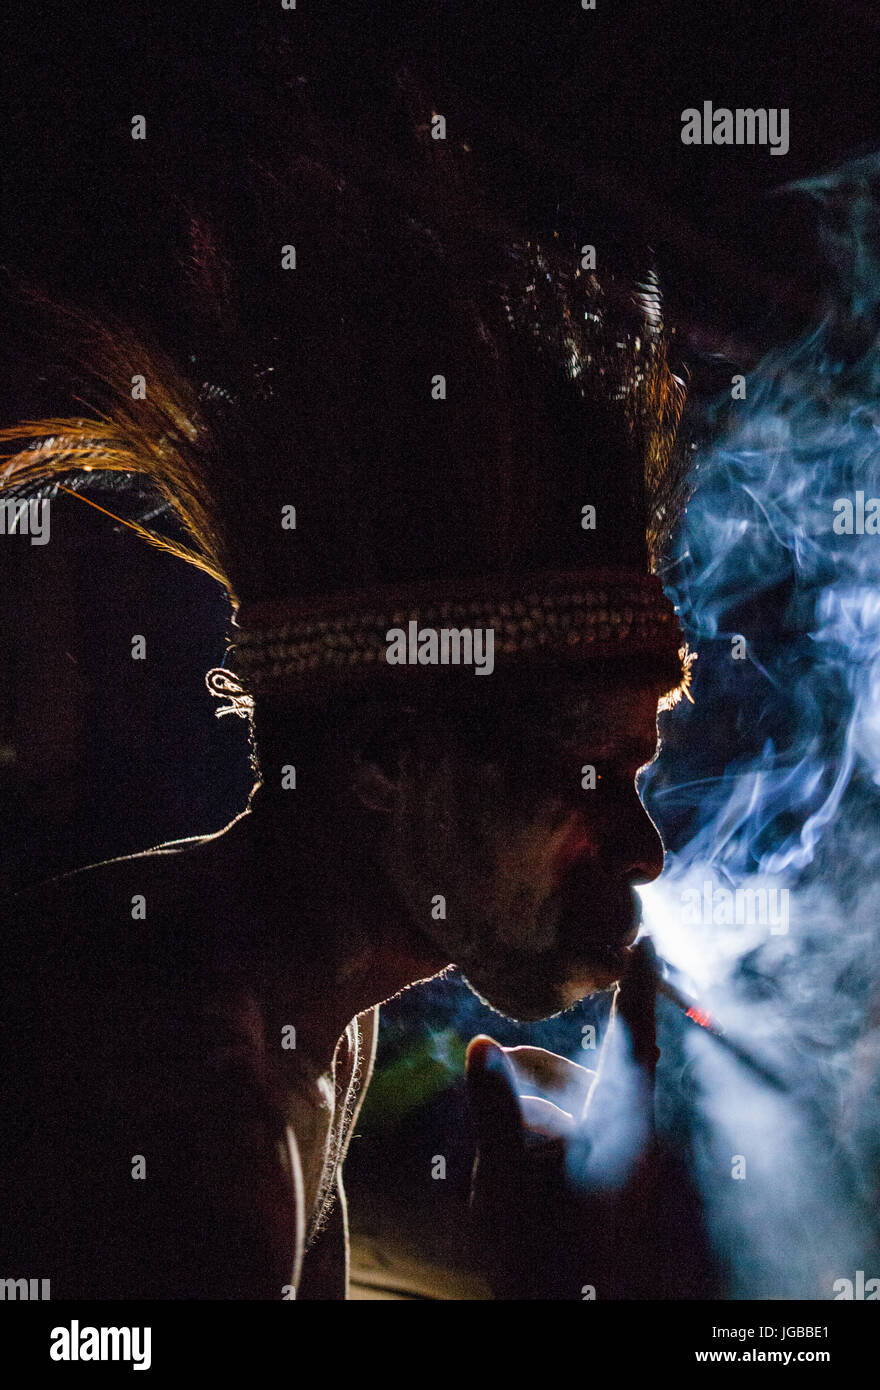 Indonesien, IRIAN JAYA, ASMAT Provinz, JOW Dorf - Juni 12: Asmat Stamm Mann raucht in der Dunkelheit. Stockfoto